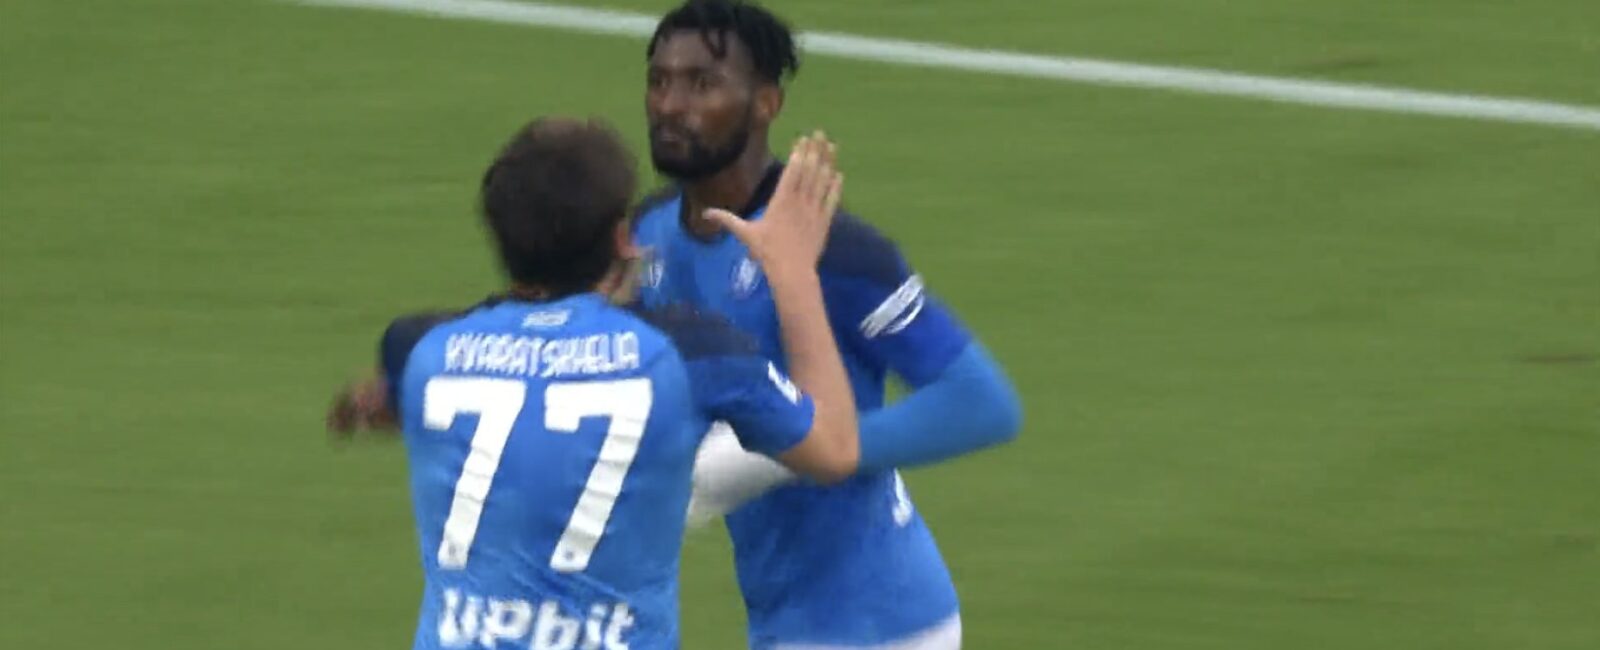 Napoli 3-1 Inter